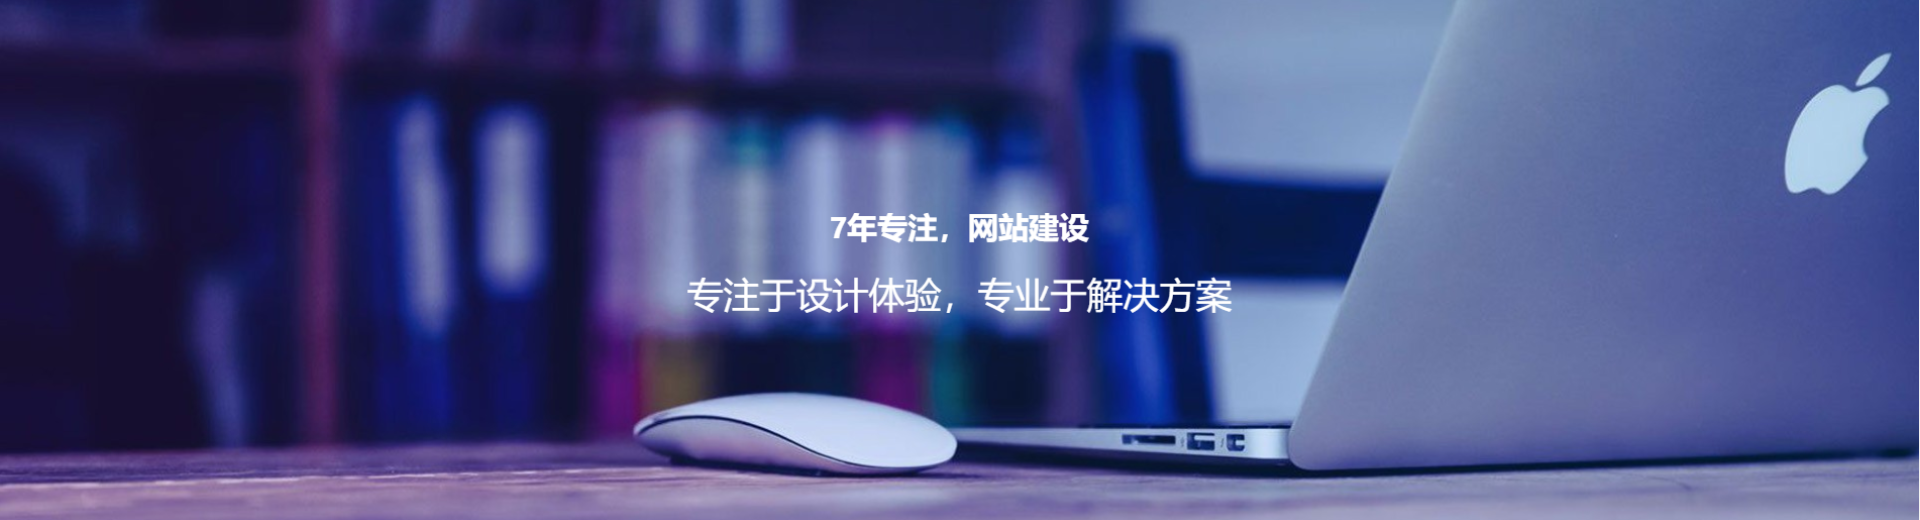 上海网站建设公司响应式网站模板